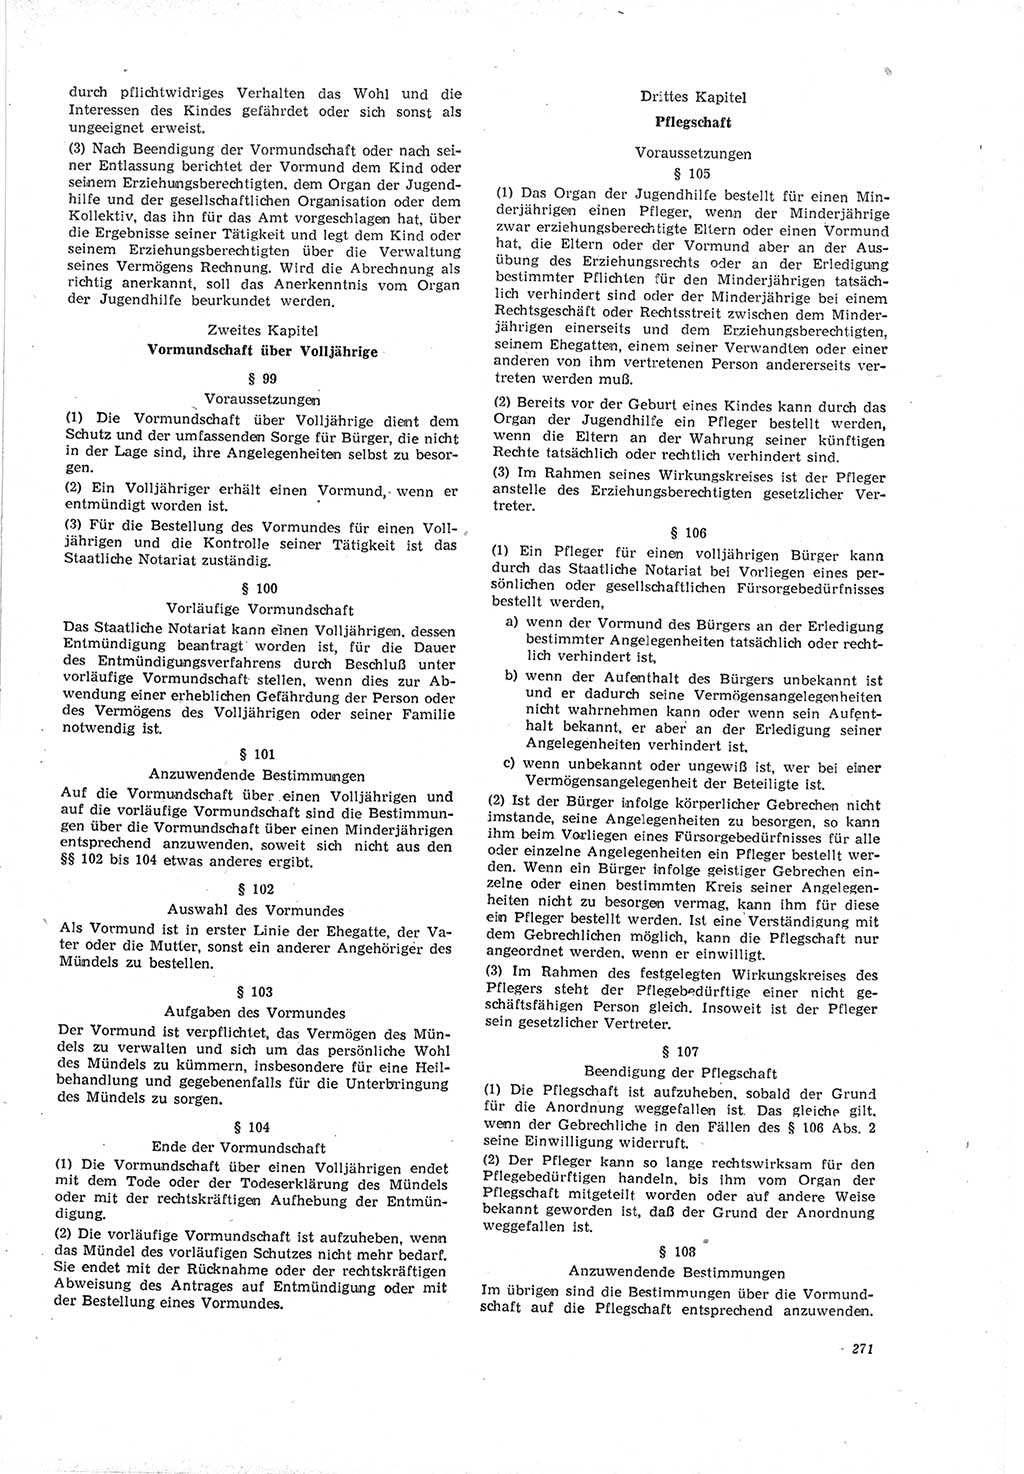 Neue Justiz (NJ), Zeitschrift für Recht und Rechtswissenschaft [Deutsche Demokratische Republik (DDR)], 19. Jahrgang 1965, Seite 271 (NJ DDR 1965, S. 271)